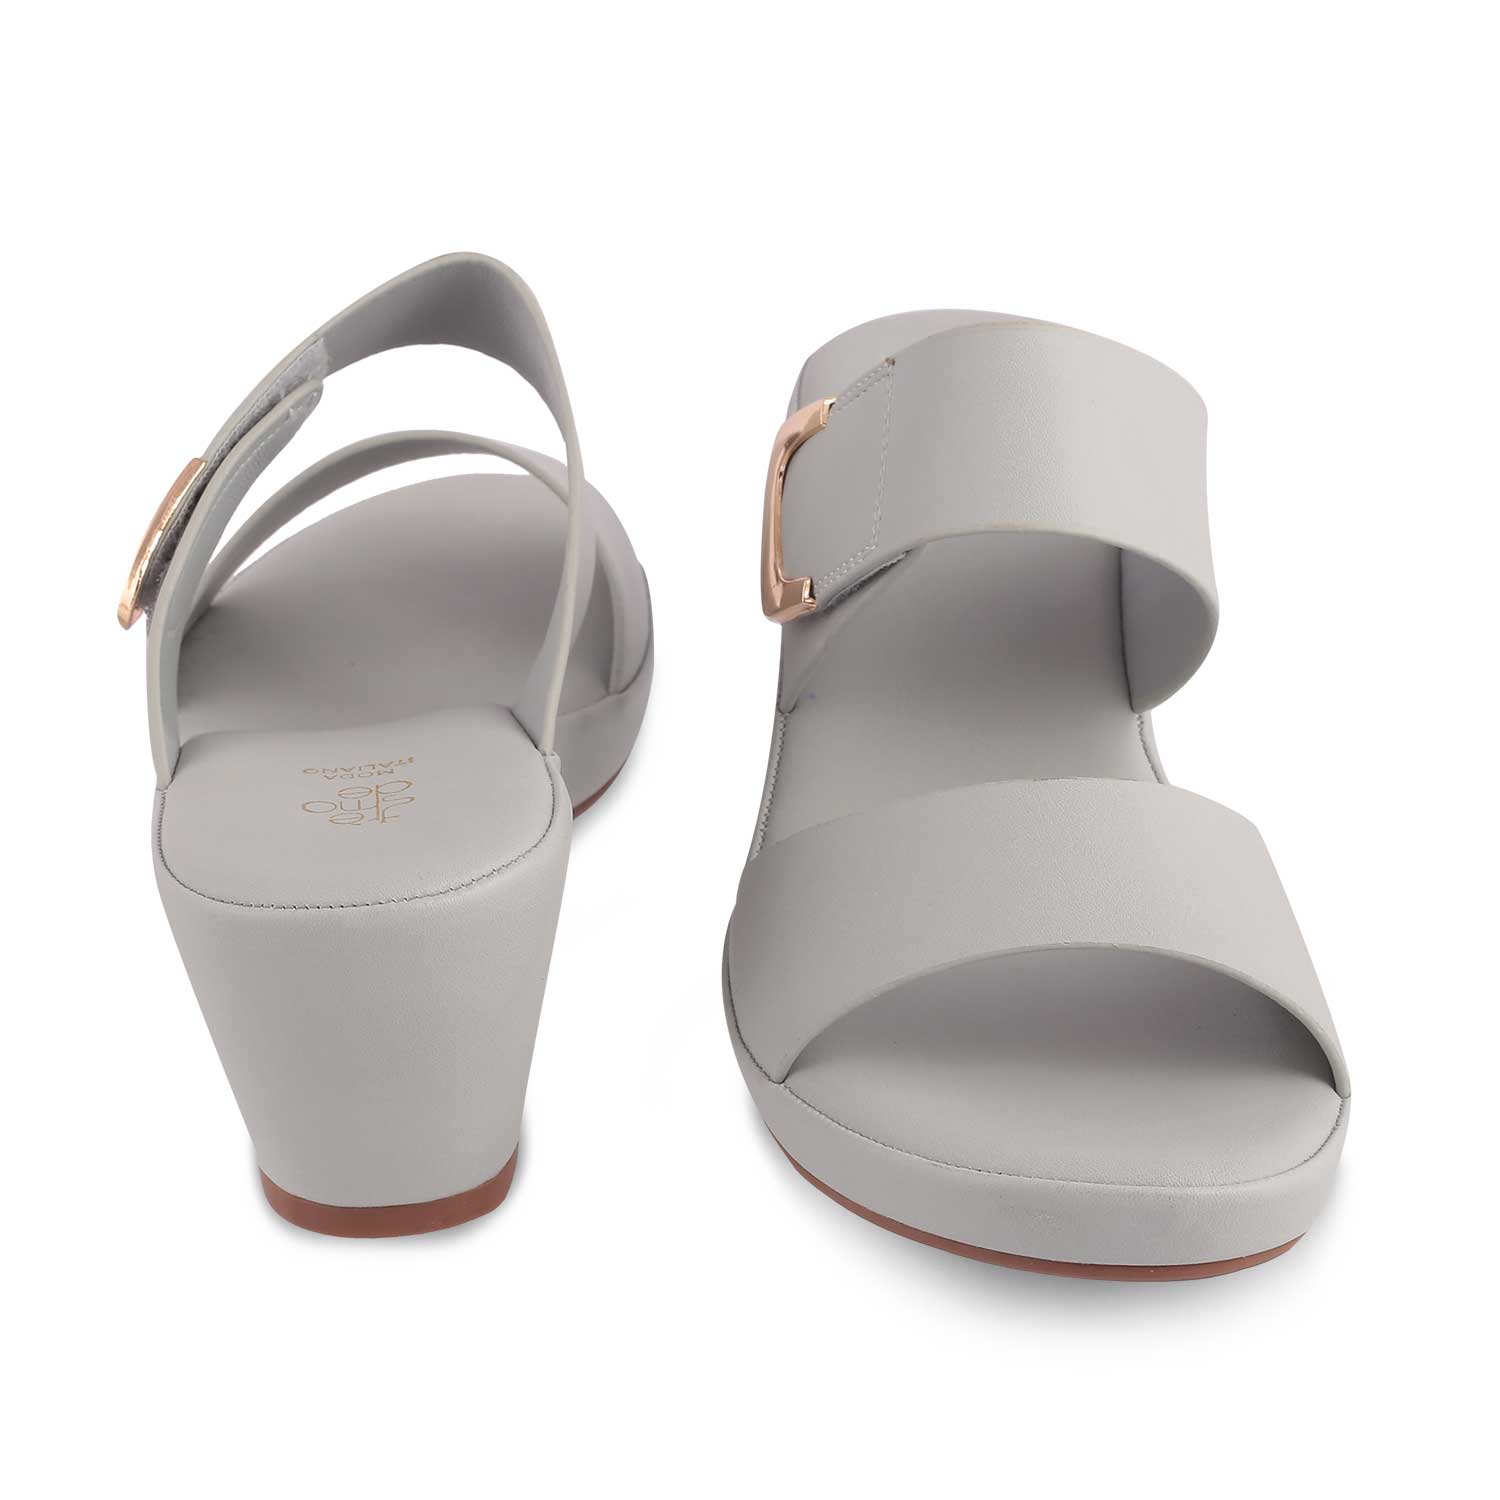 The Bona Grey Women's Casual Block Heel Sandals Tresmode